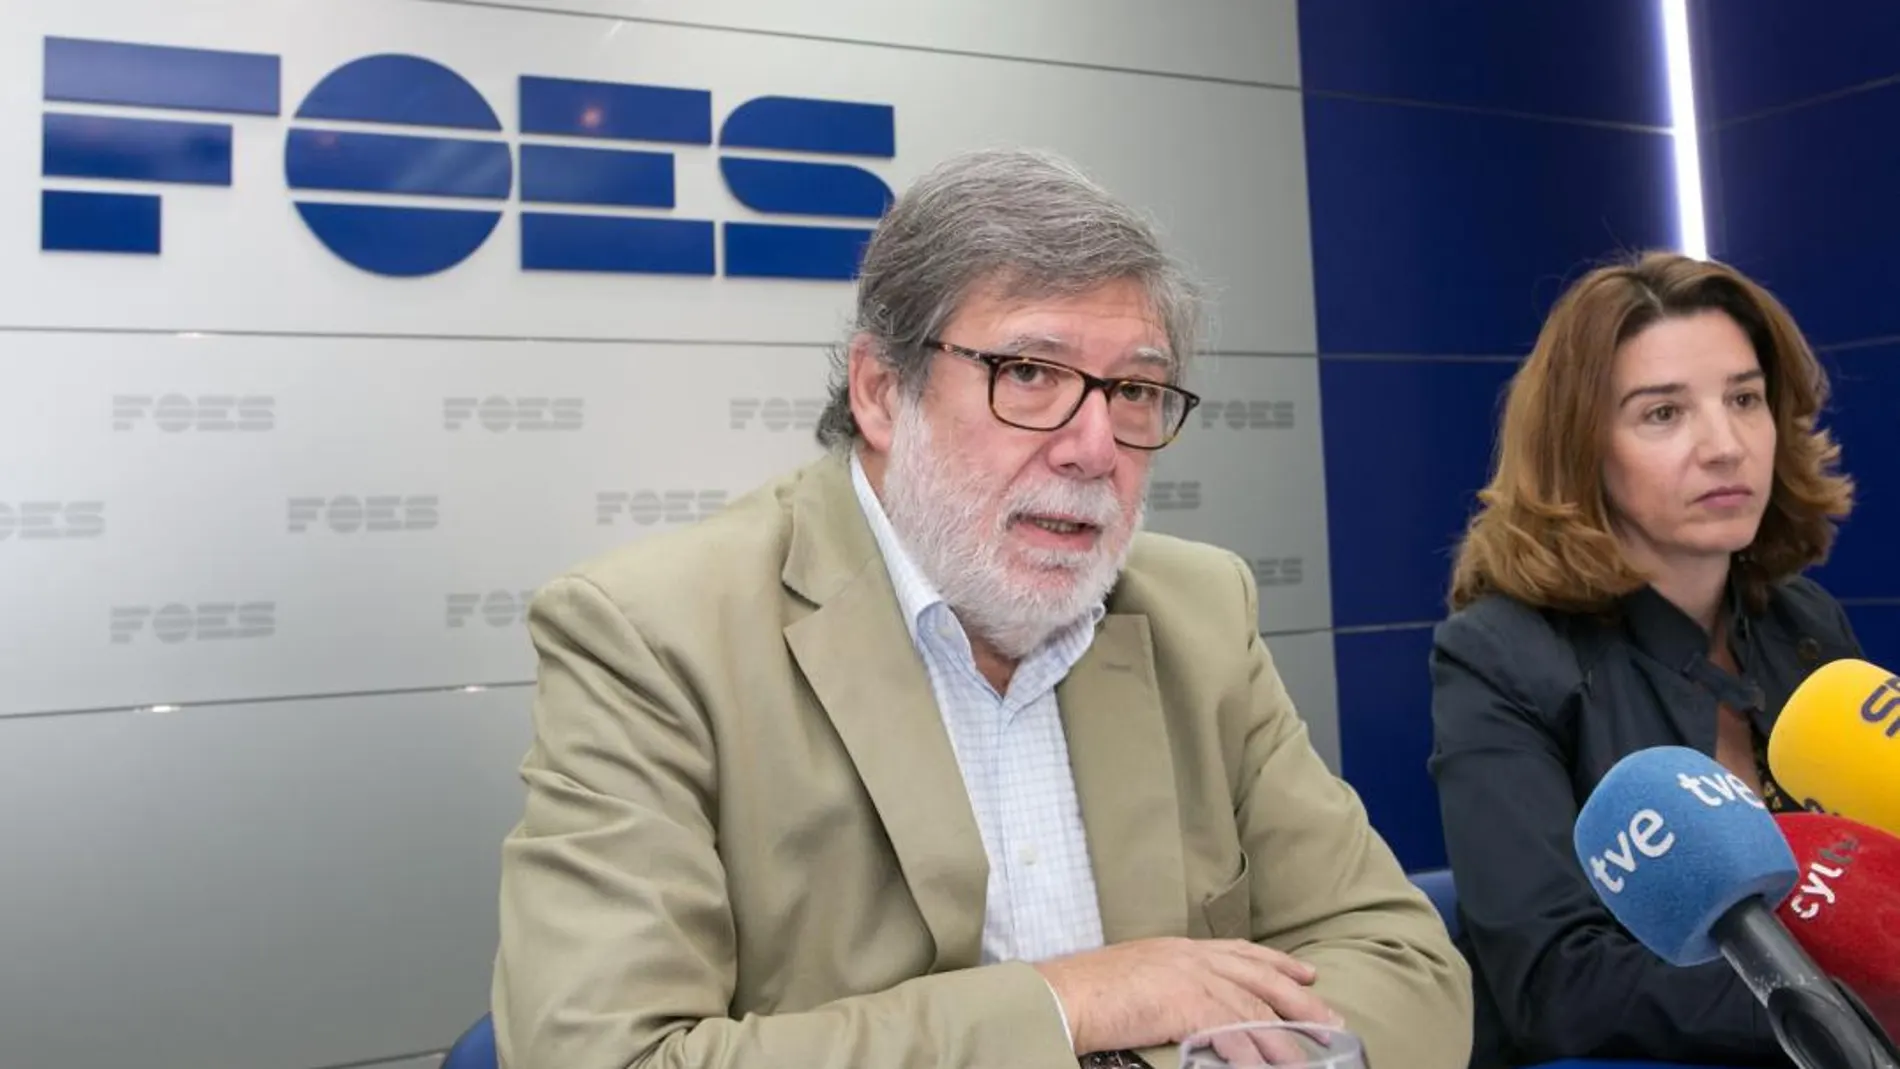 Santiago Aparicio y María Ángeles Fernández, presidente y directora general de FOES, respectivamente, presentan el documento